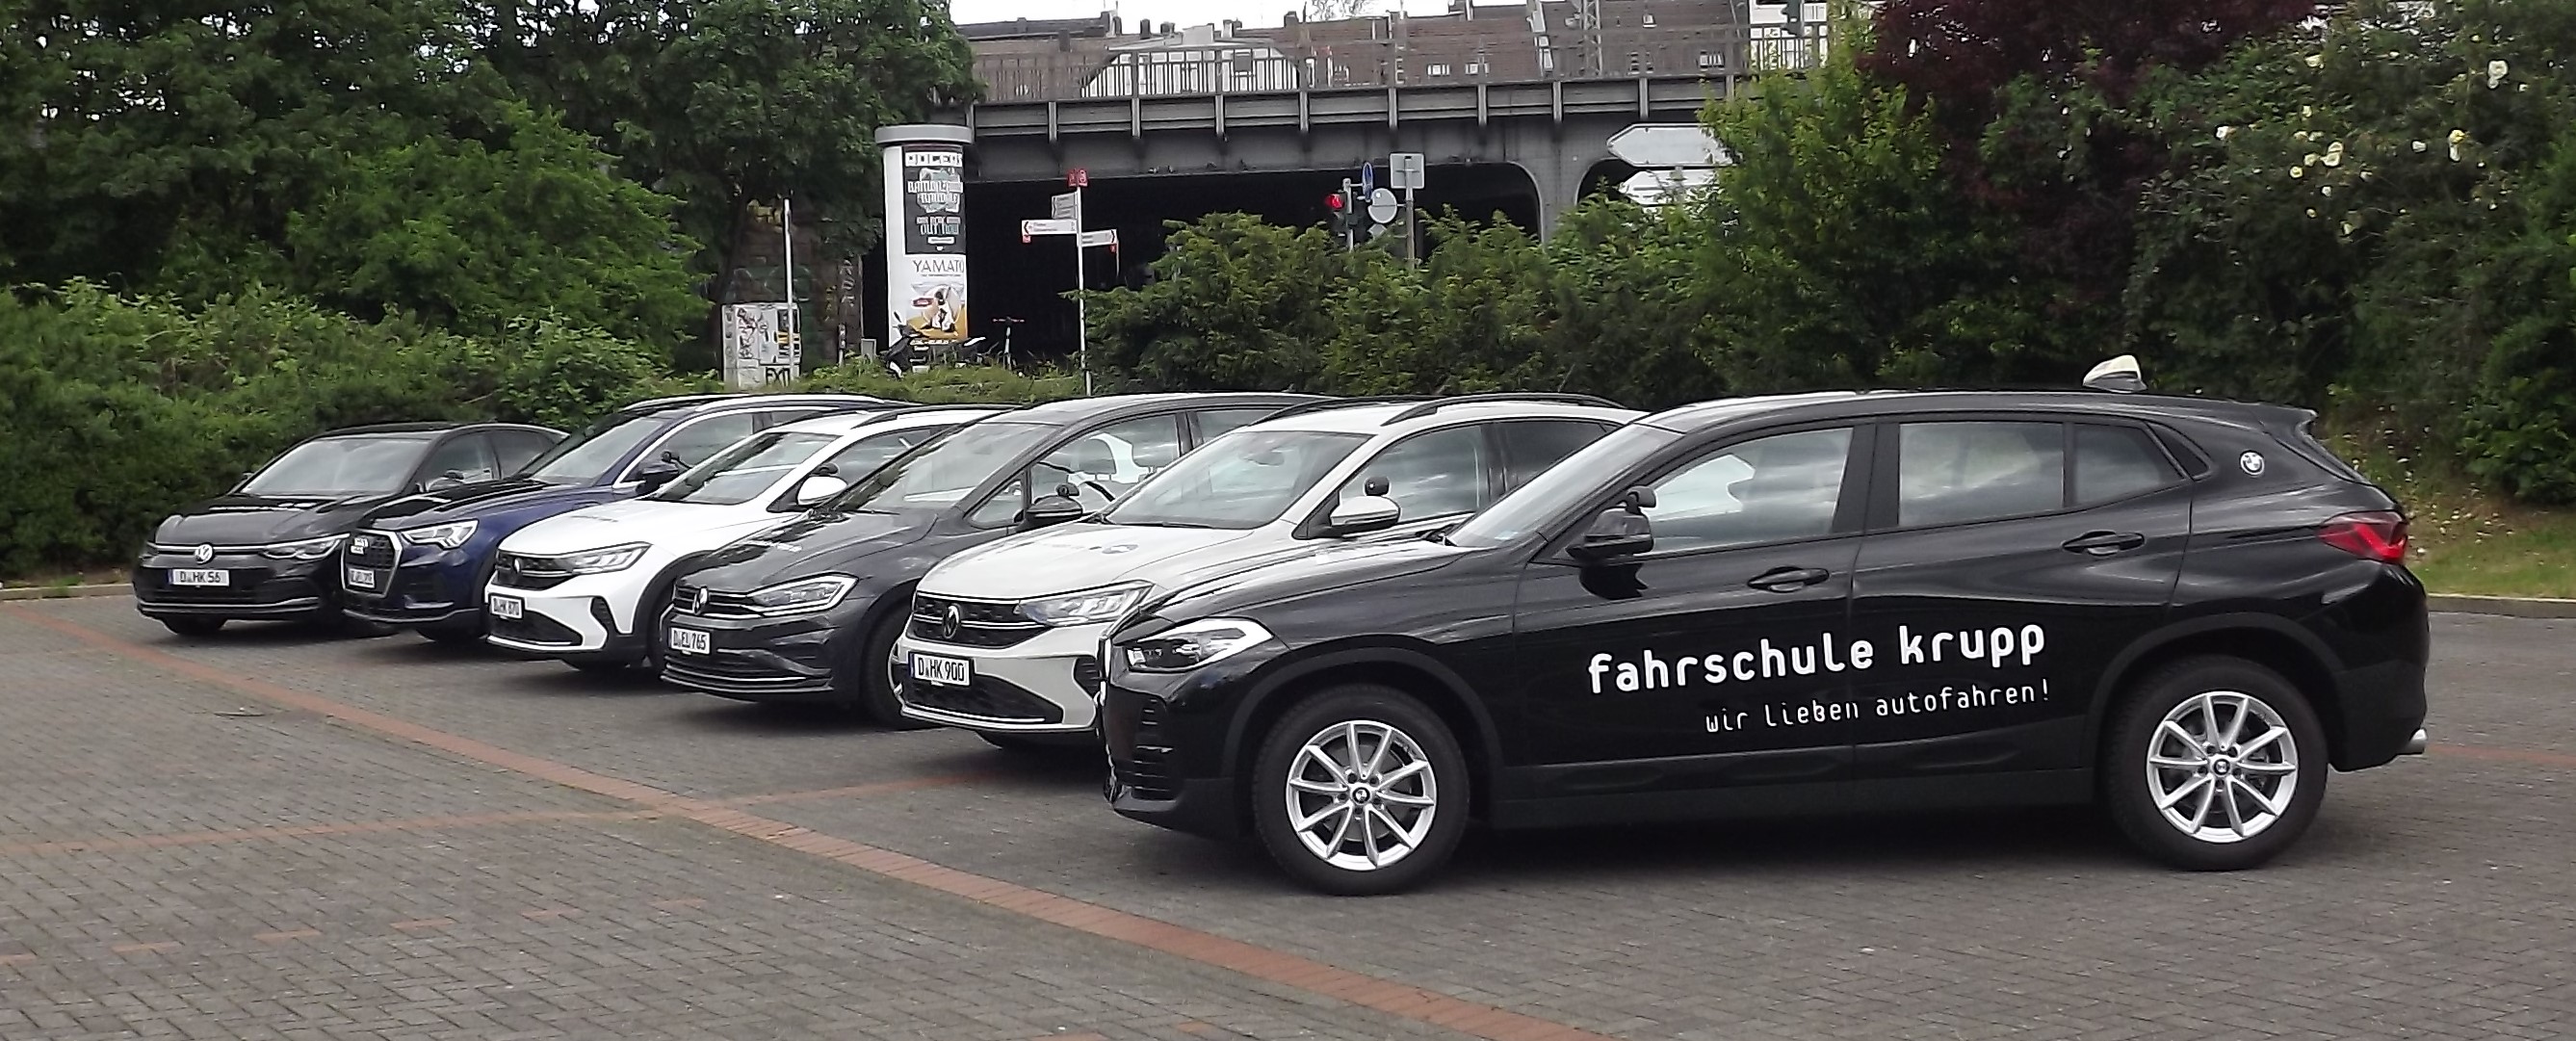 Fahrzeuge der Fahrschule in Düsseldorf